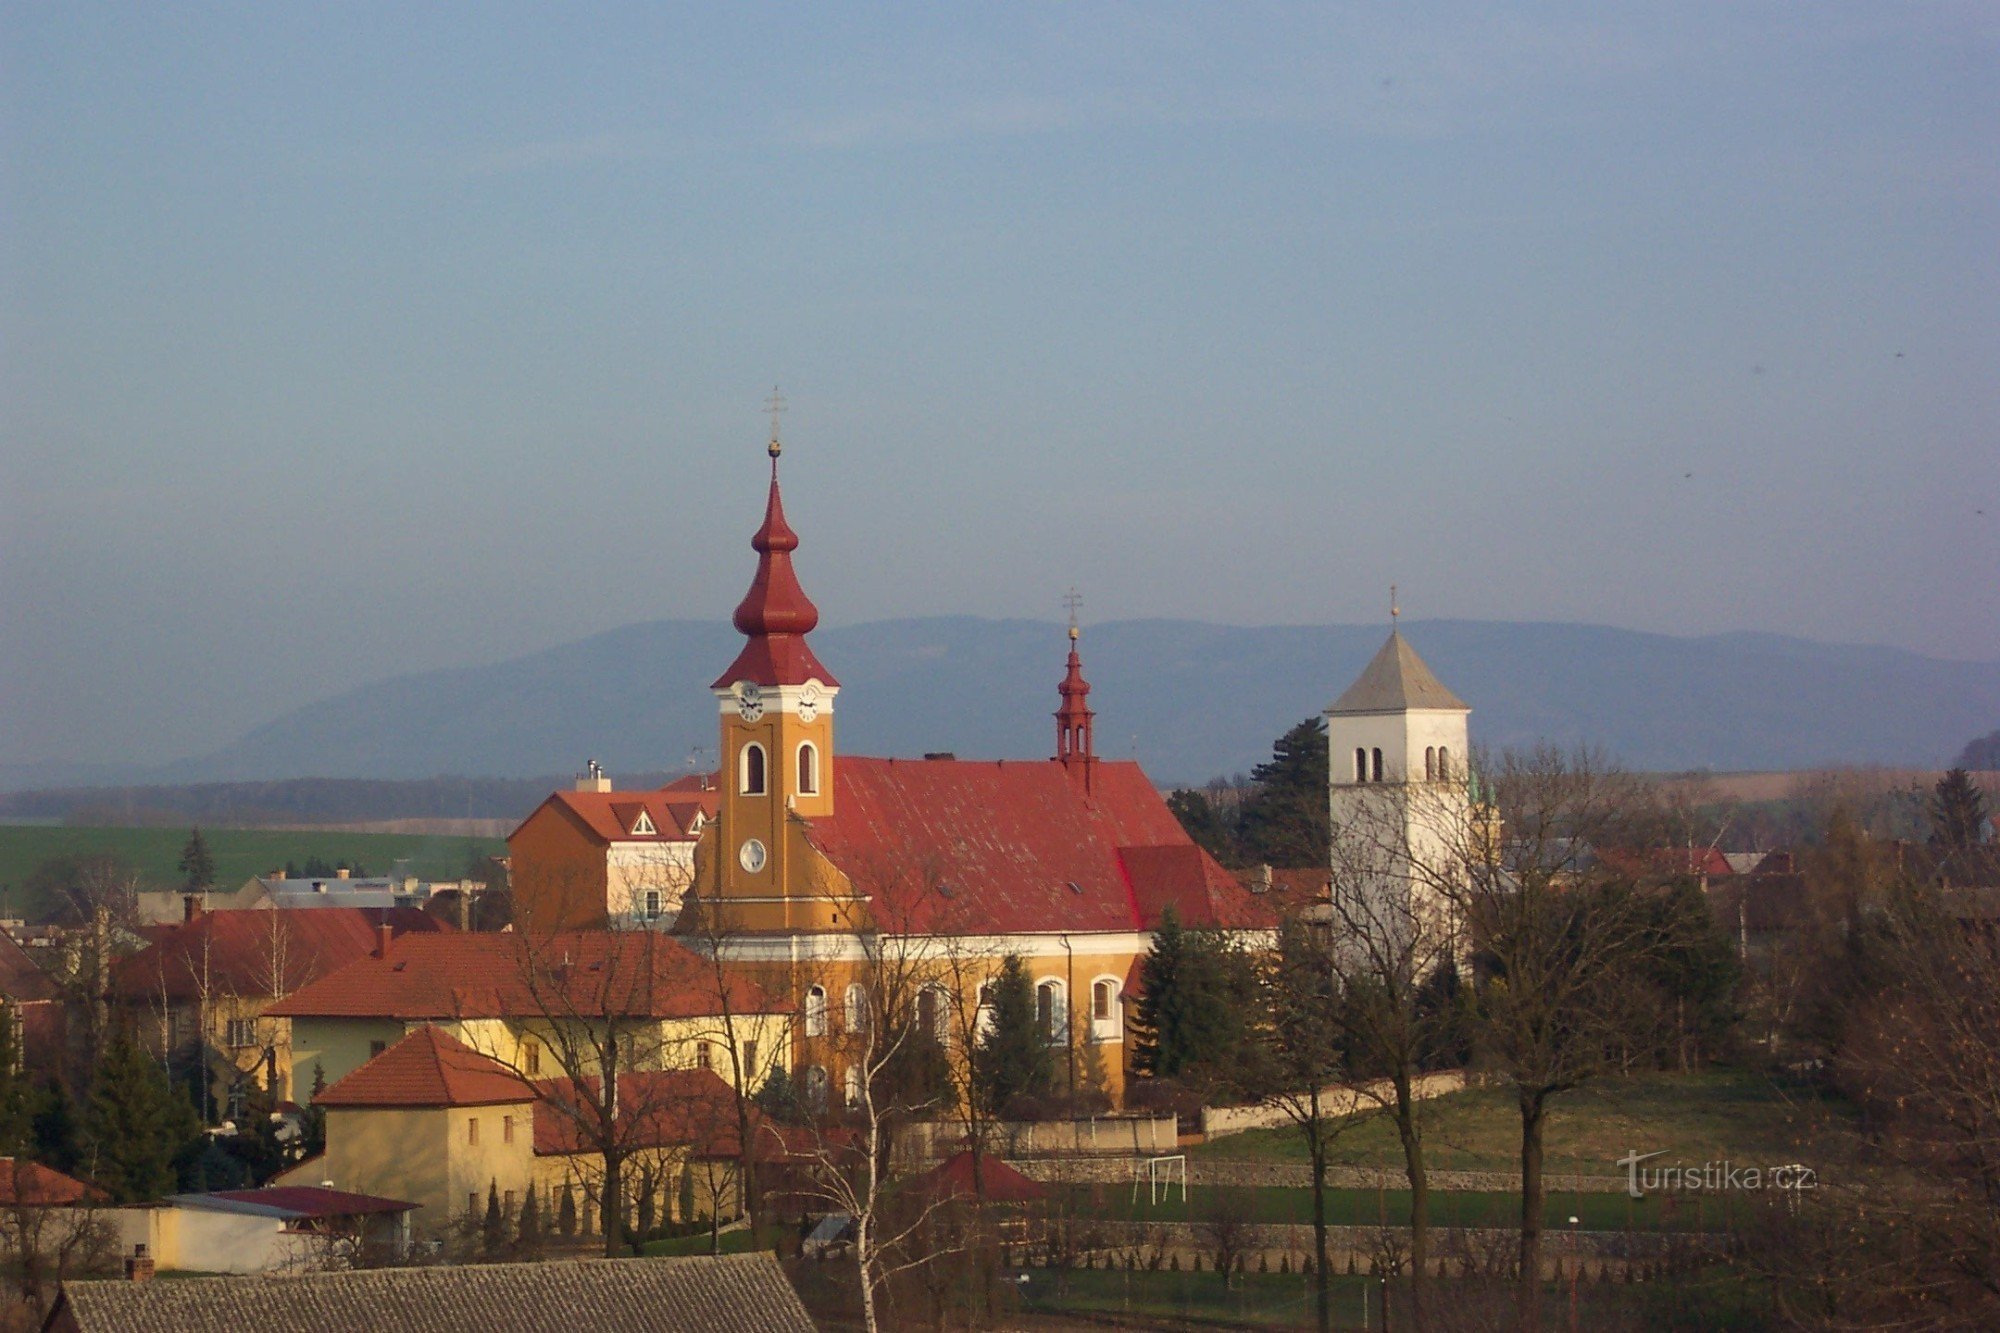 crkva sv. Havela Drevohostice